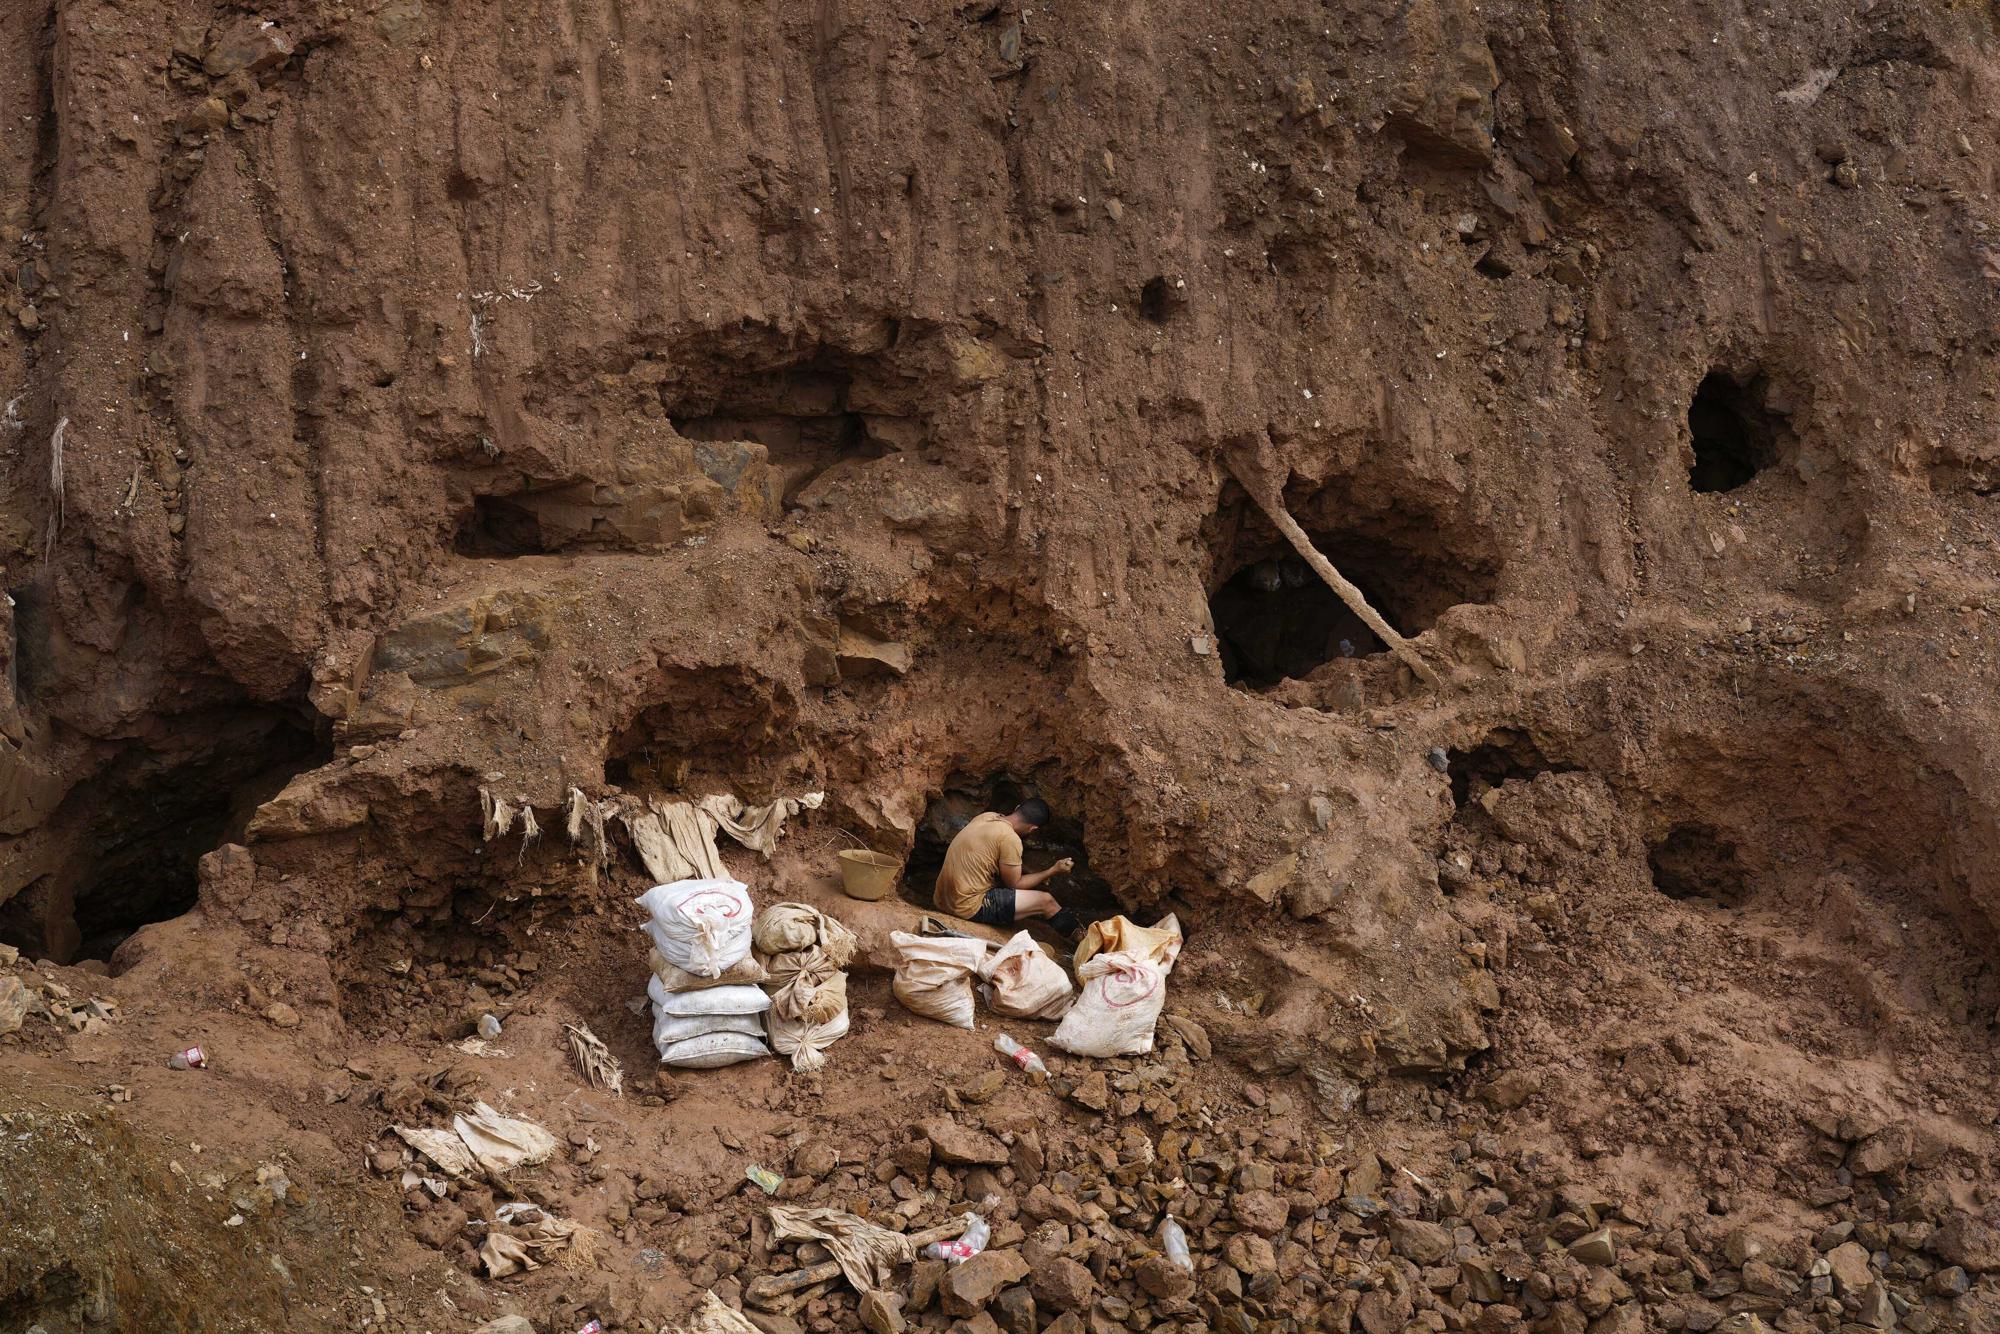 José Rivas excava en busca de oro en una mina a cielo abierto en El Callao, estado de Bolívar, Venezuela, el sábado 29 de abril de 2023. “Solo quiero comprar mi casa y trabajar en otra cosa”, dijo Rivas. “A veces pienso en irme del país”. (Foto AP/Matías Delacroix)